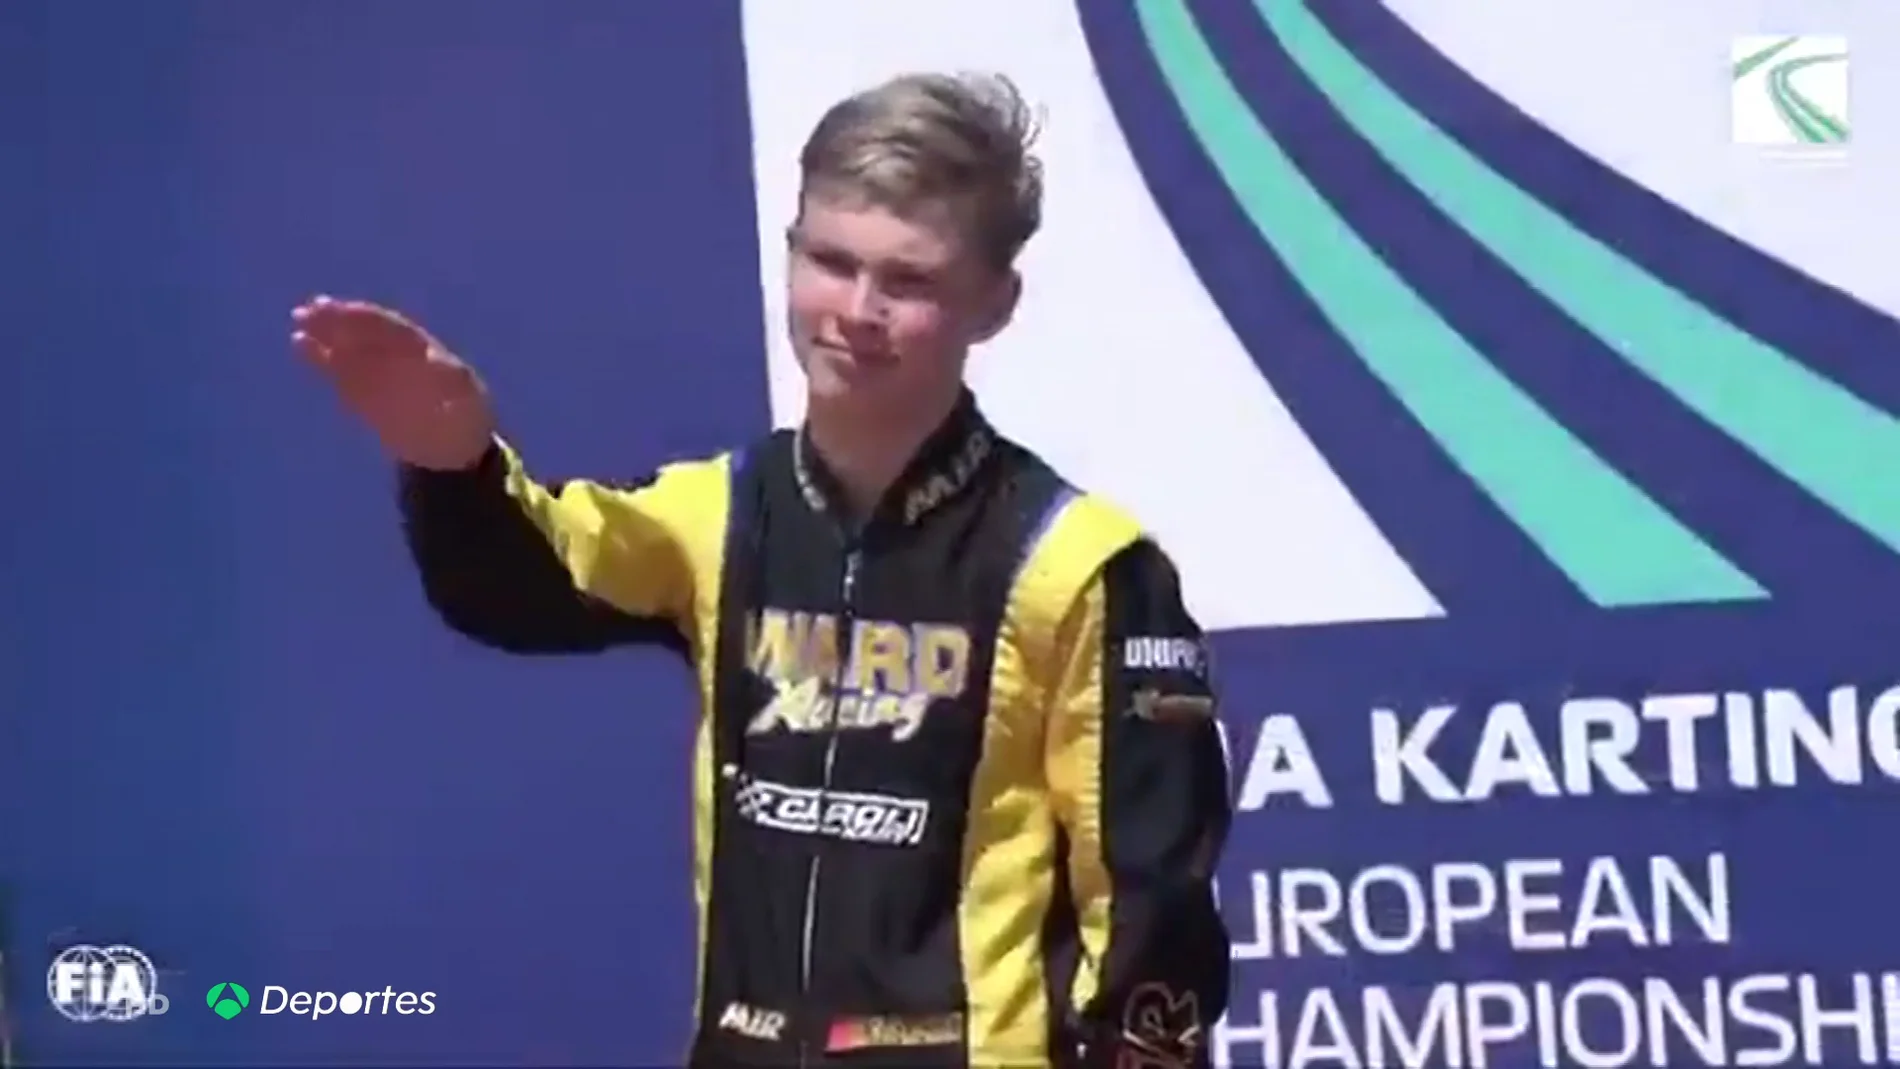 La FIA investiga a un piloto ruso de 15 años por hacer el saludo nazi en el podio